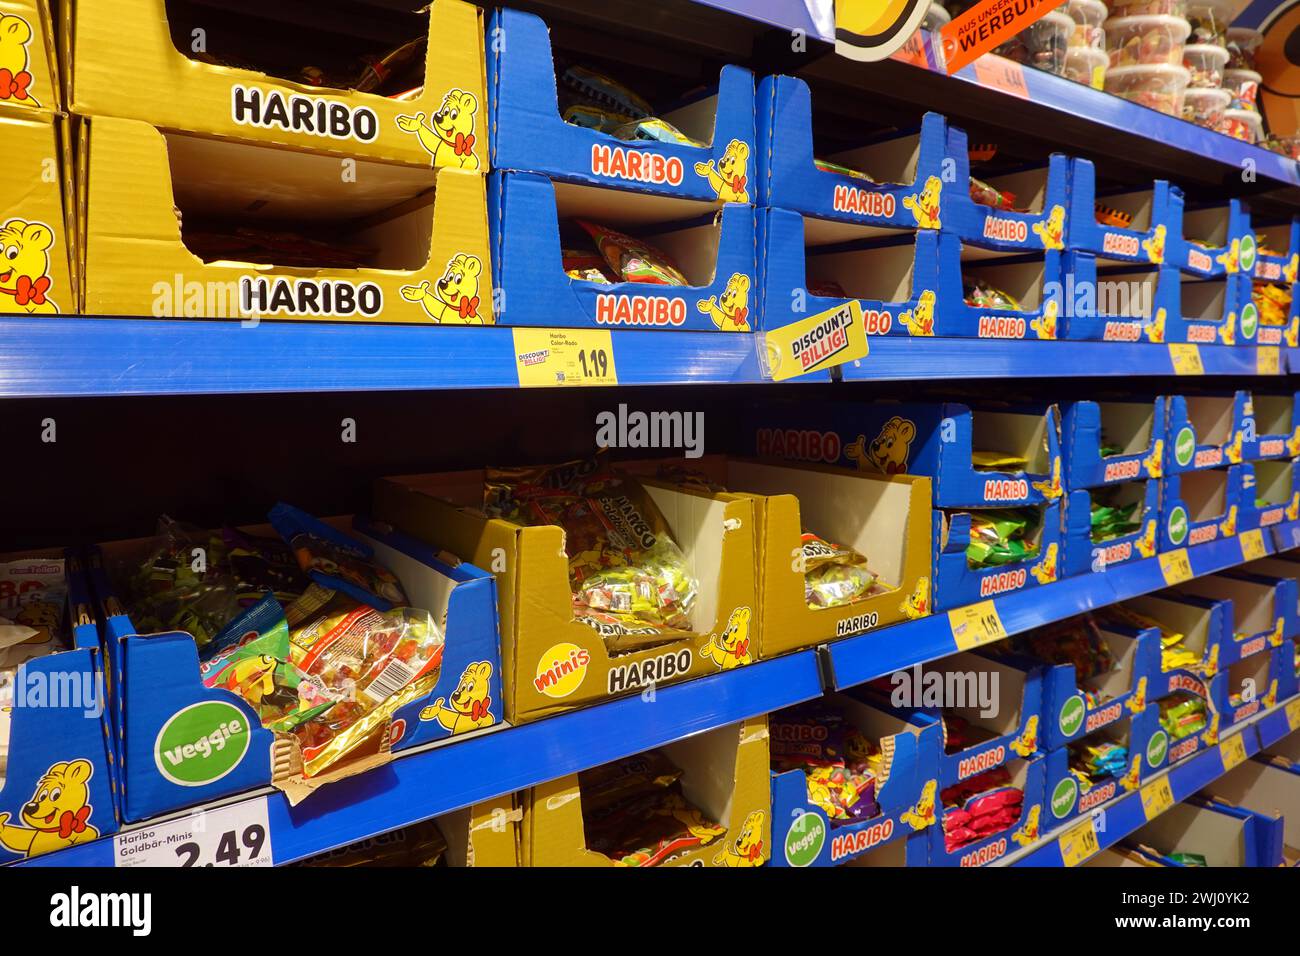 Produits Haribo sur une étagère de supermarché - image symbolique Banque D'Images